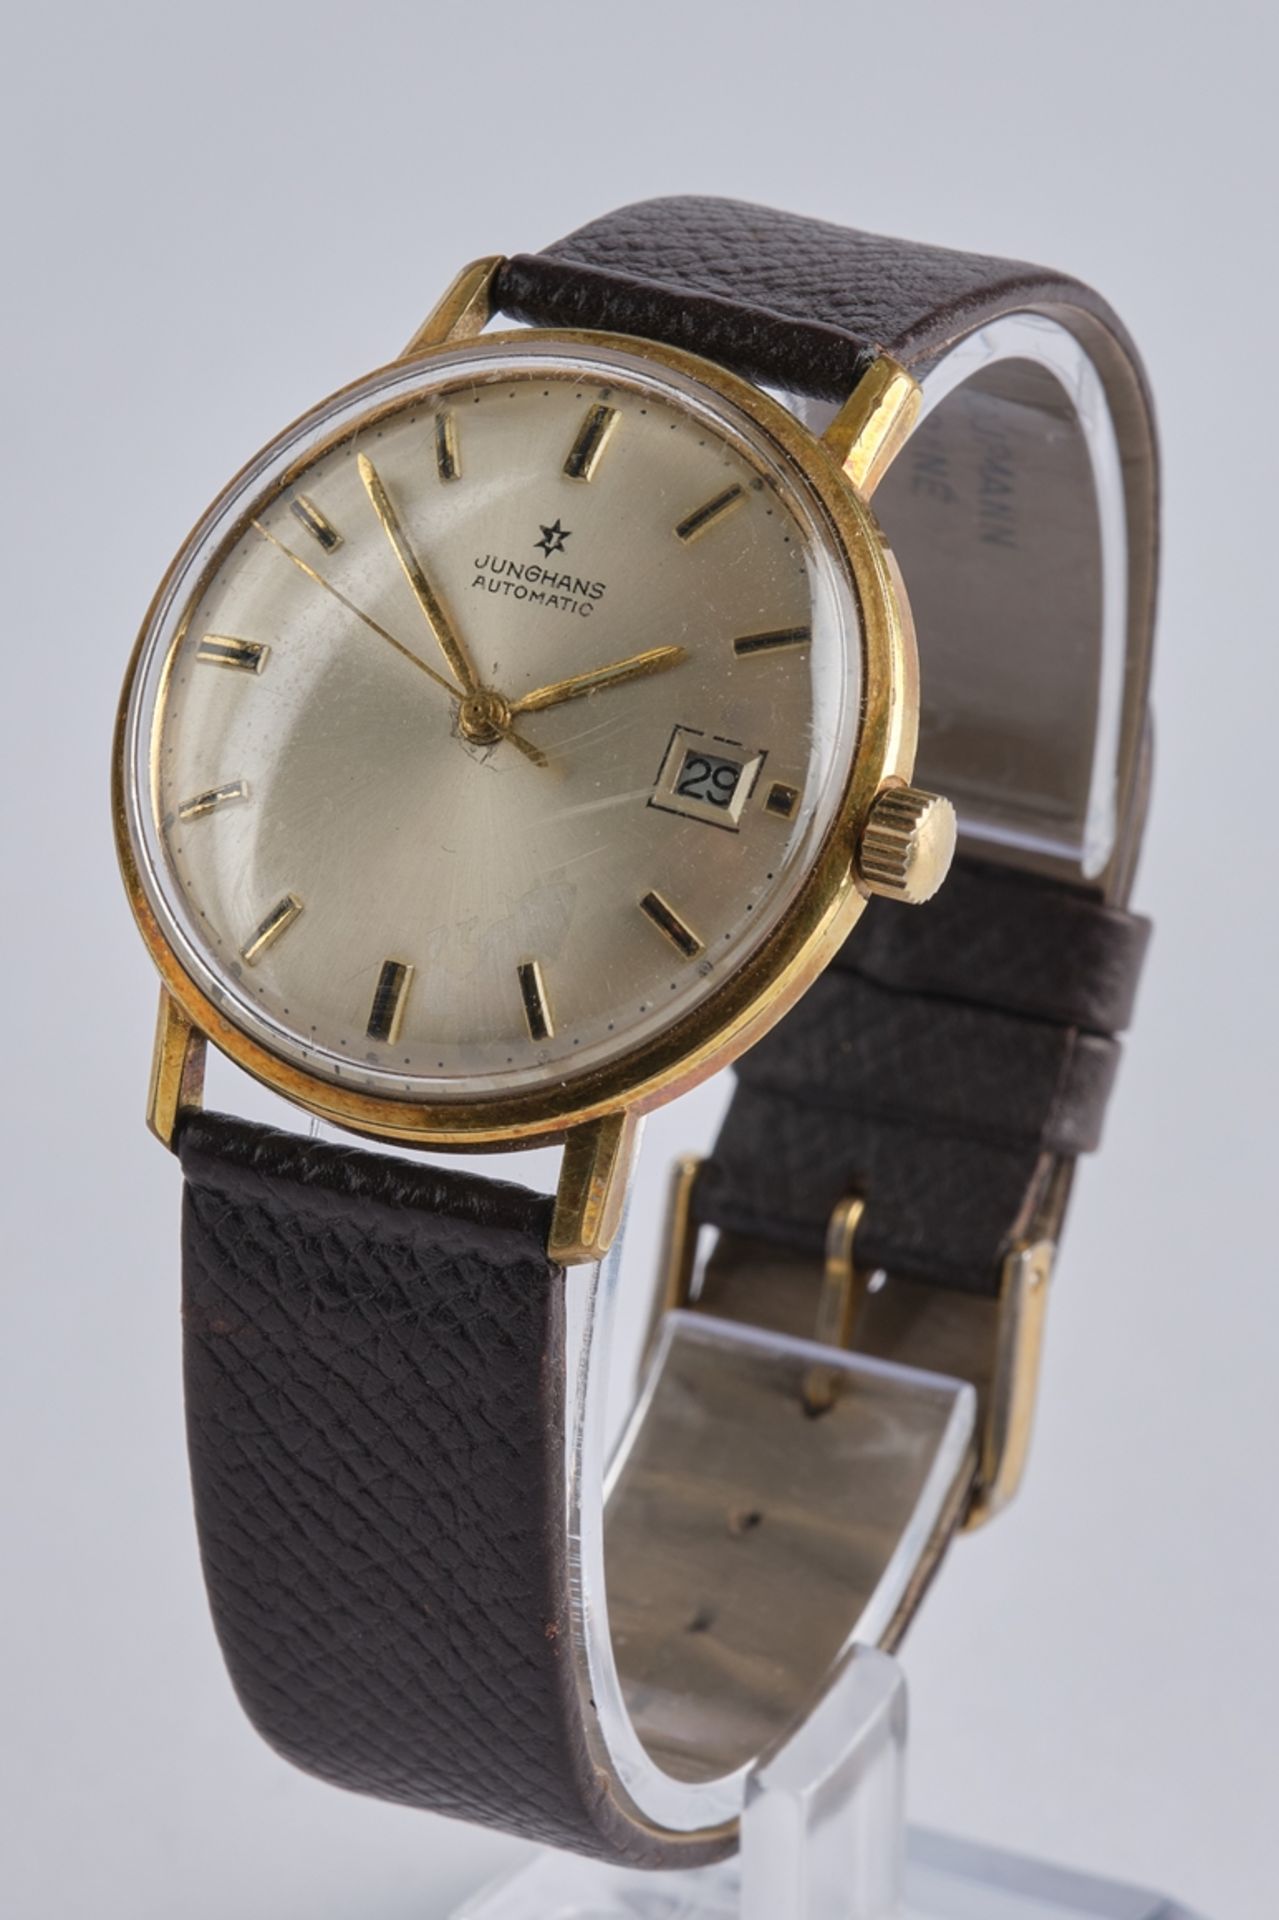 Junghans, Herren-Armbanduhr, 1960er Jahre, Gehäuse vergoldet, Zifferblatt mit Strichindizes und Dat